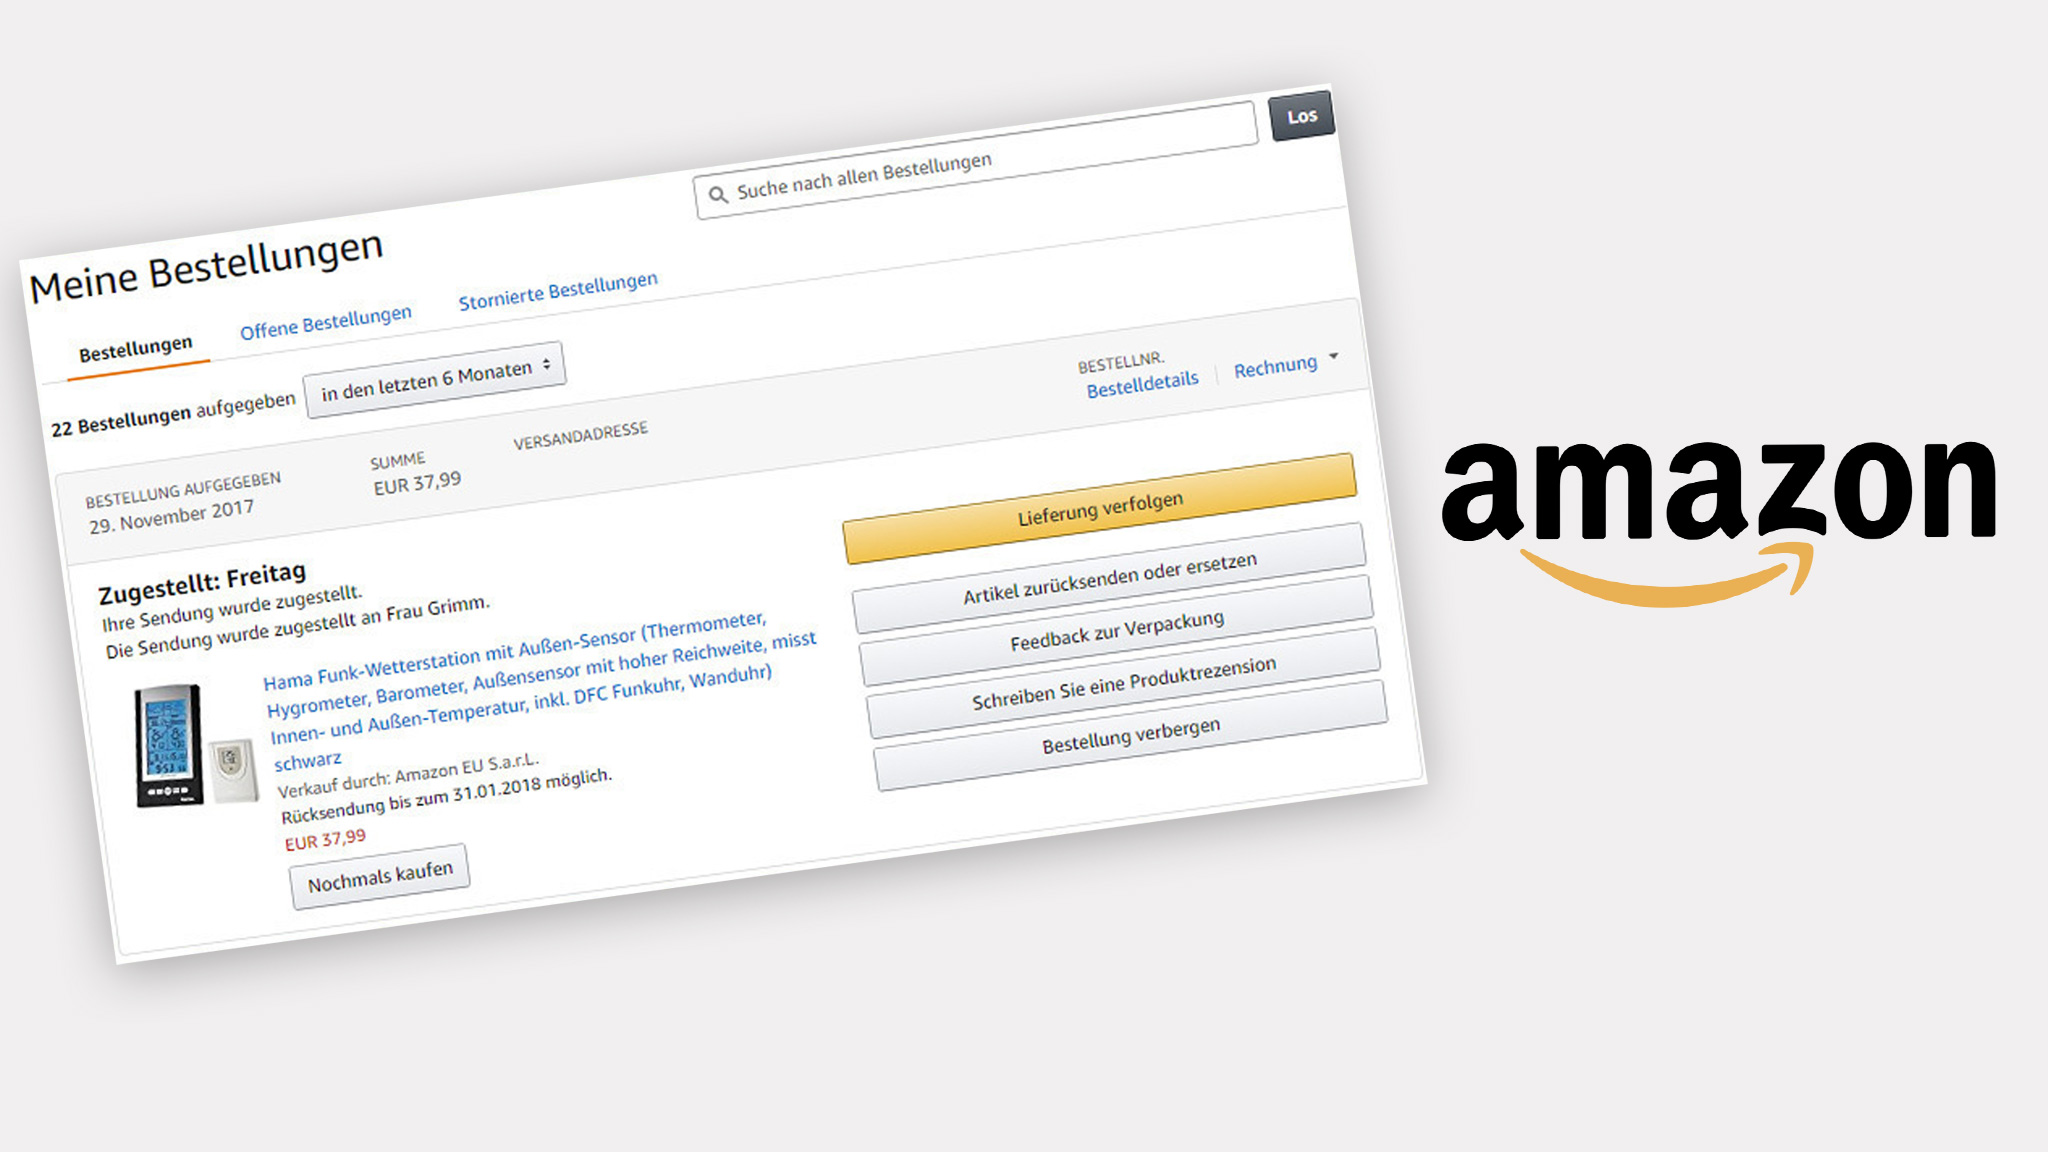 Amazon-Bestellung verbergen: So geht's | TippCenter - COMPUTER BILD